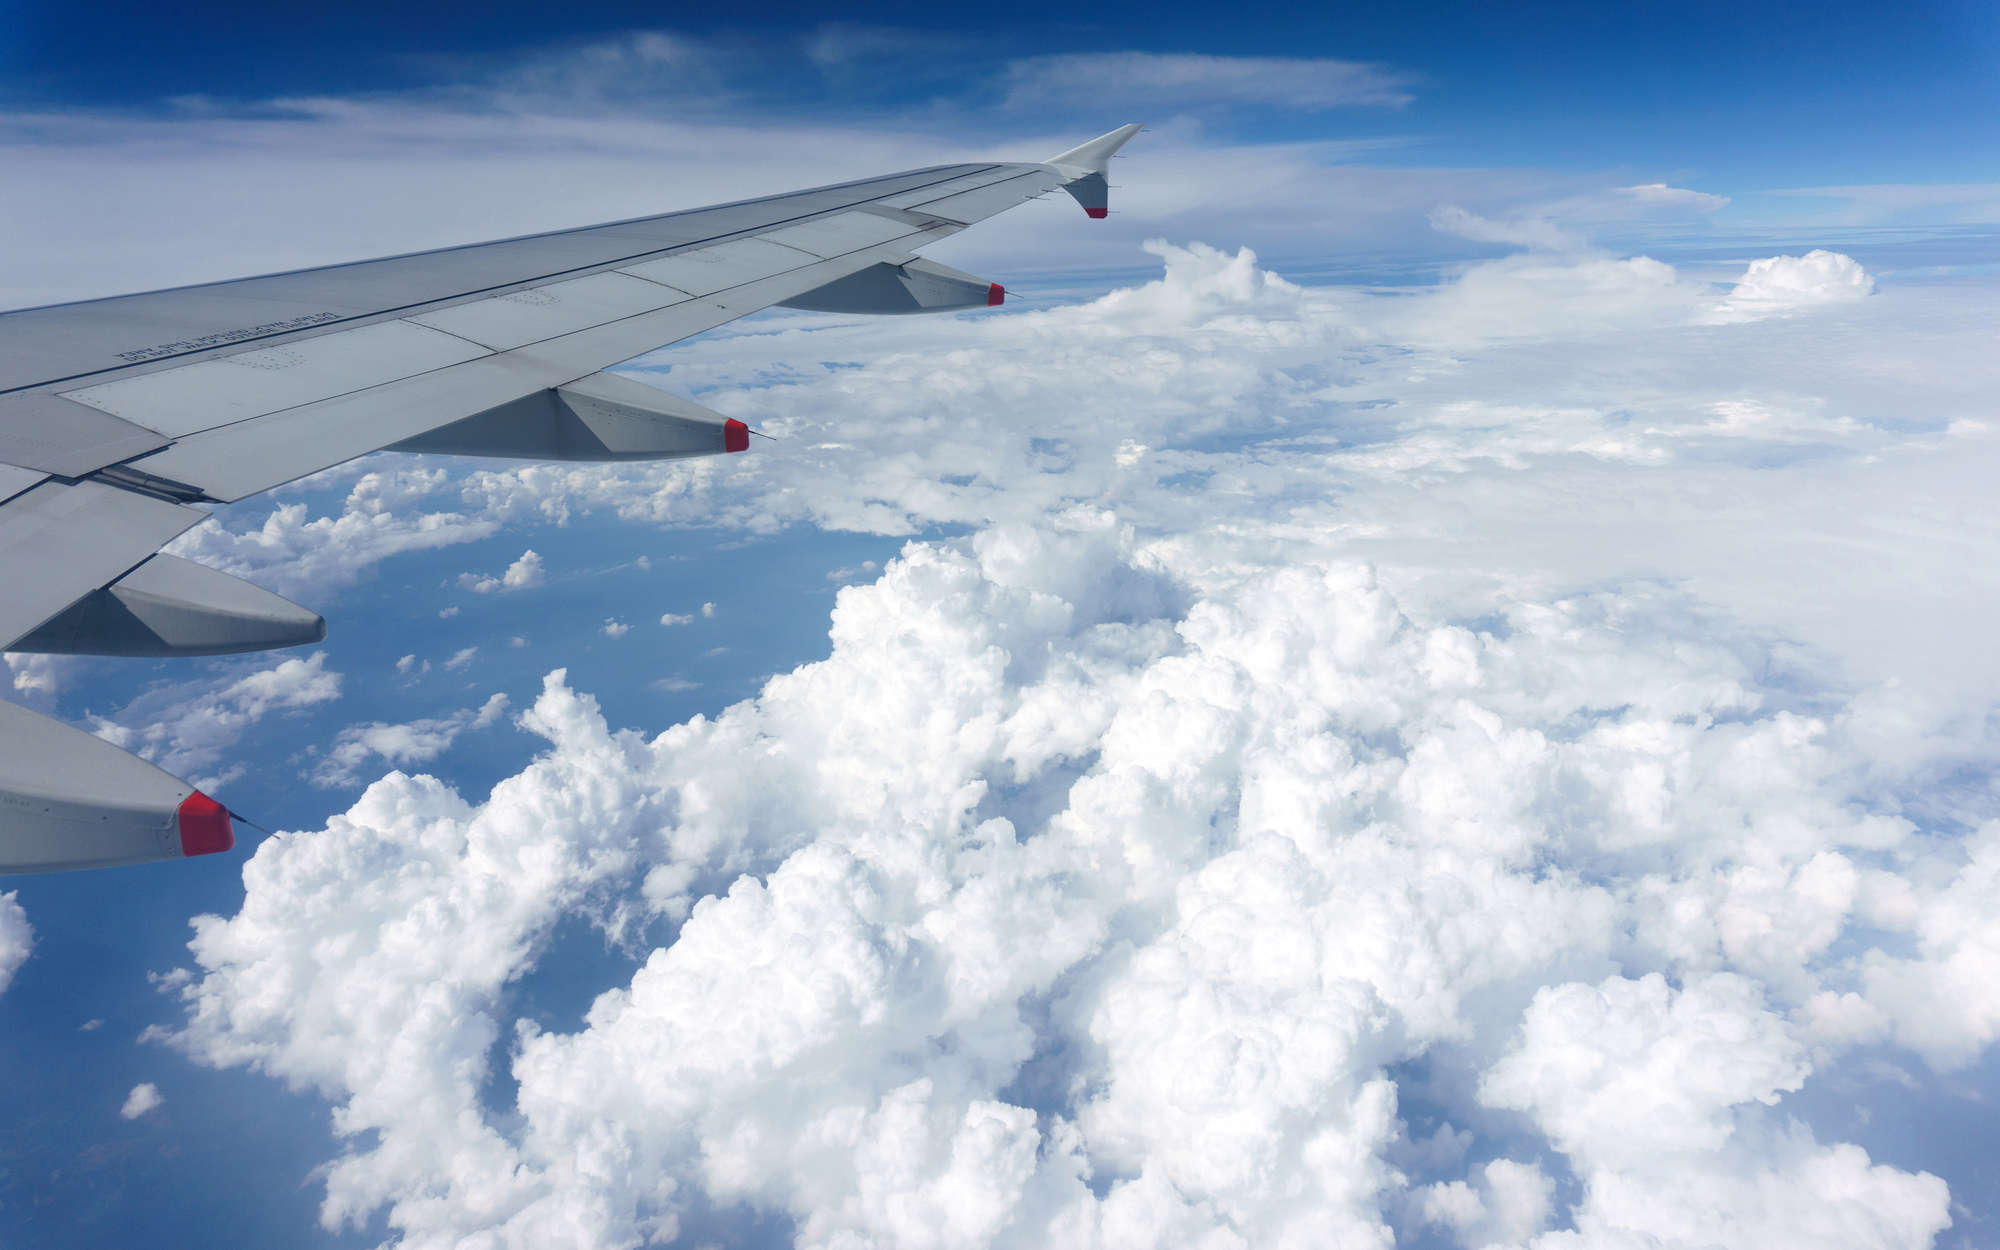             Fotomurali Aereo sopra le nuvole - Pile liscio premium
        